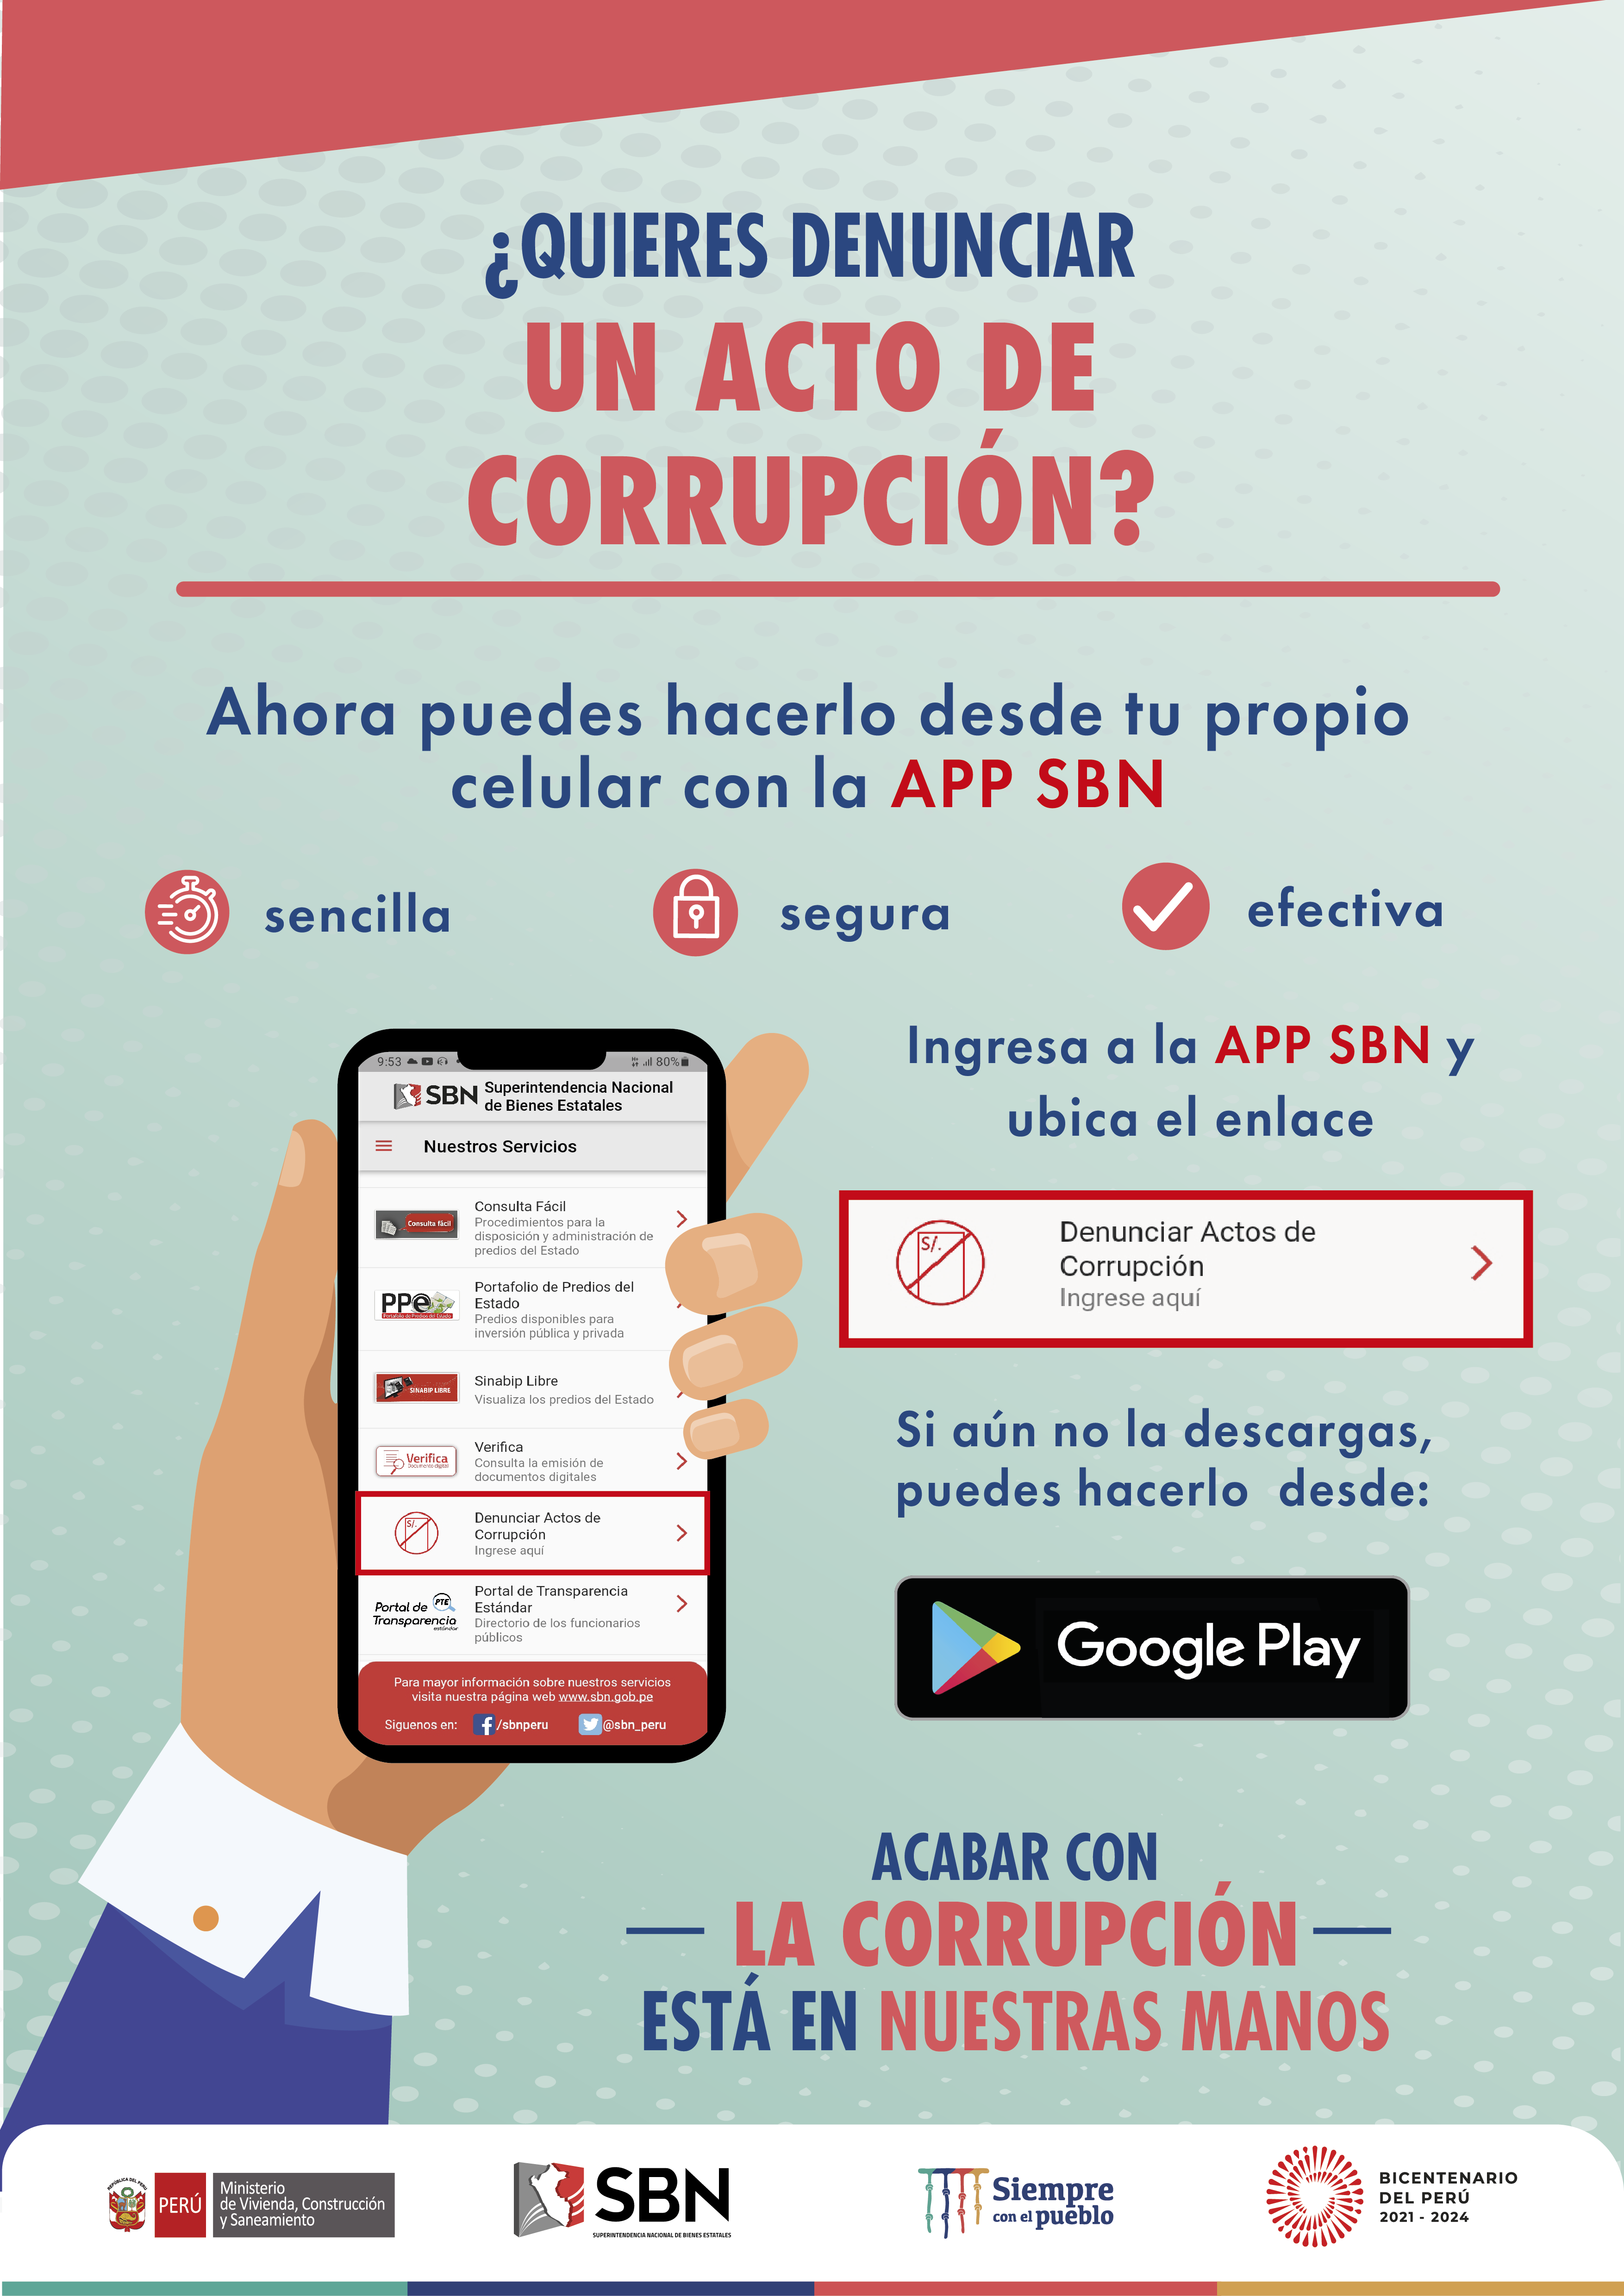  campaña de difusión: Denuncia la corrupción a través del APP de la SBN.